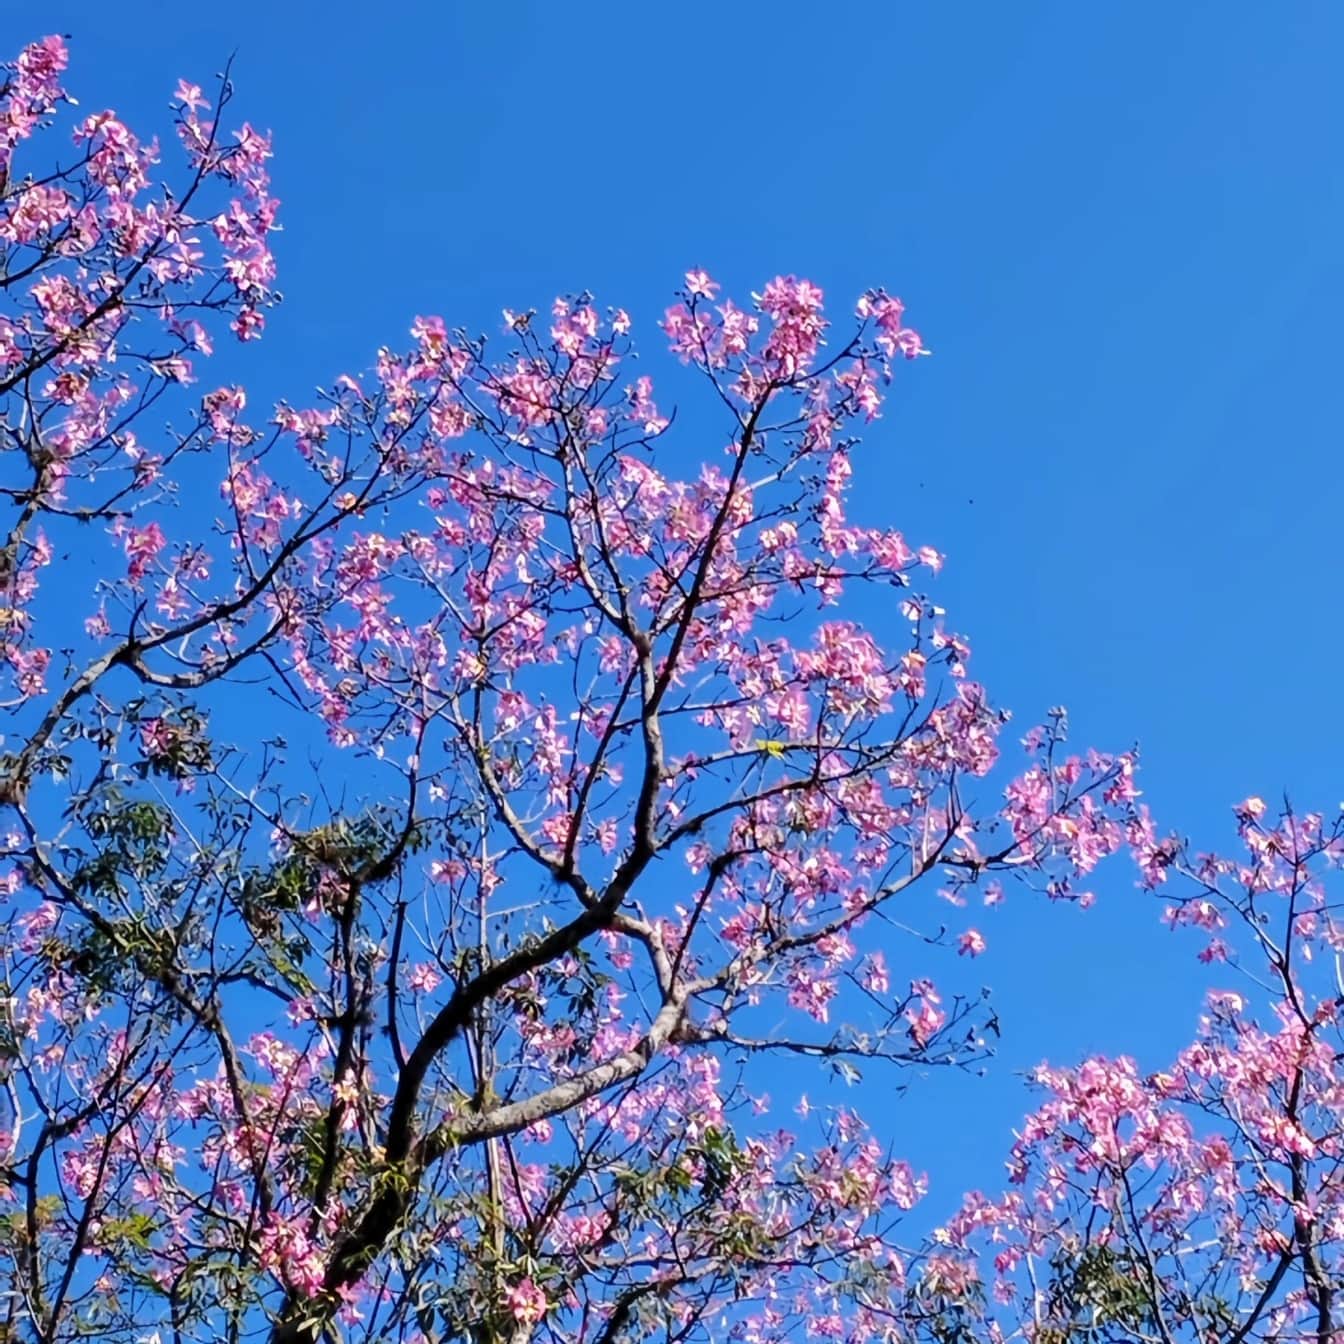 Pohon dengan bunga merah muda di musim semi